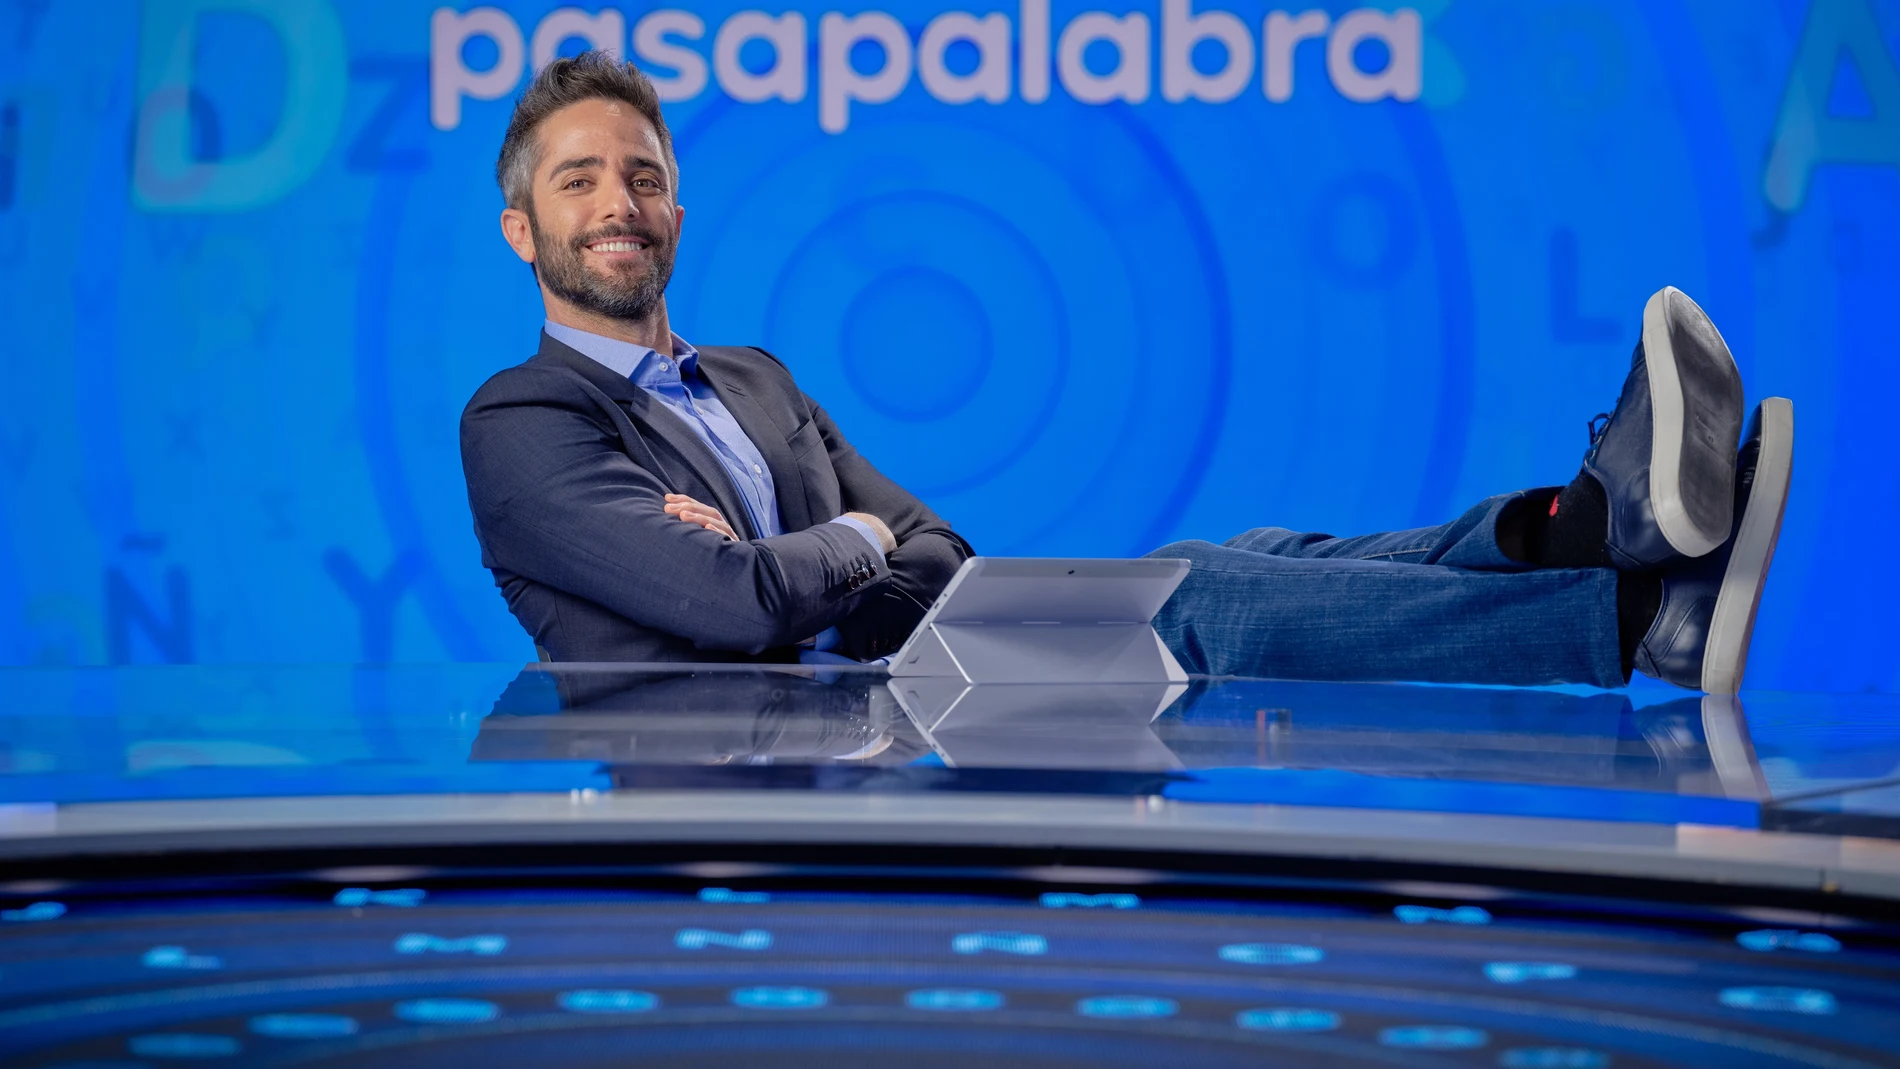 Cvirus.- Roberto Leal da positivo en coronavirus y será sustituido por Manel Fuentes en 'Pasapalabra'